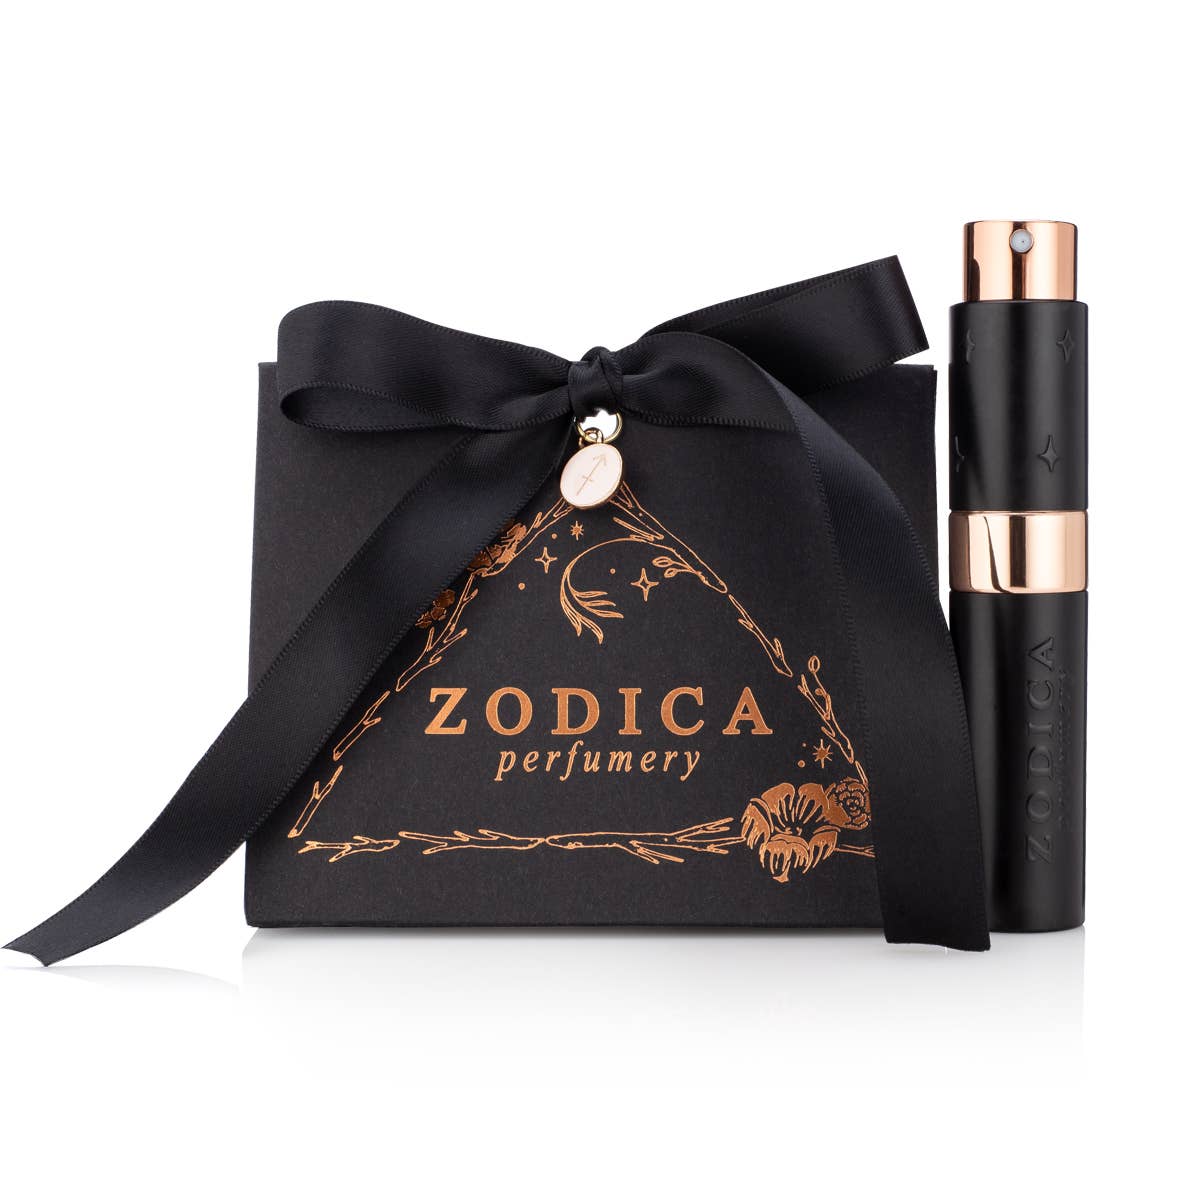 Zodica Perfumery - Taurus